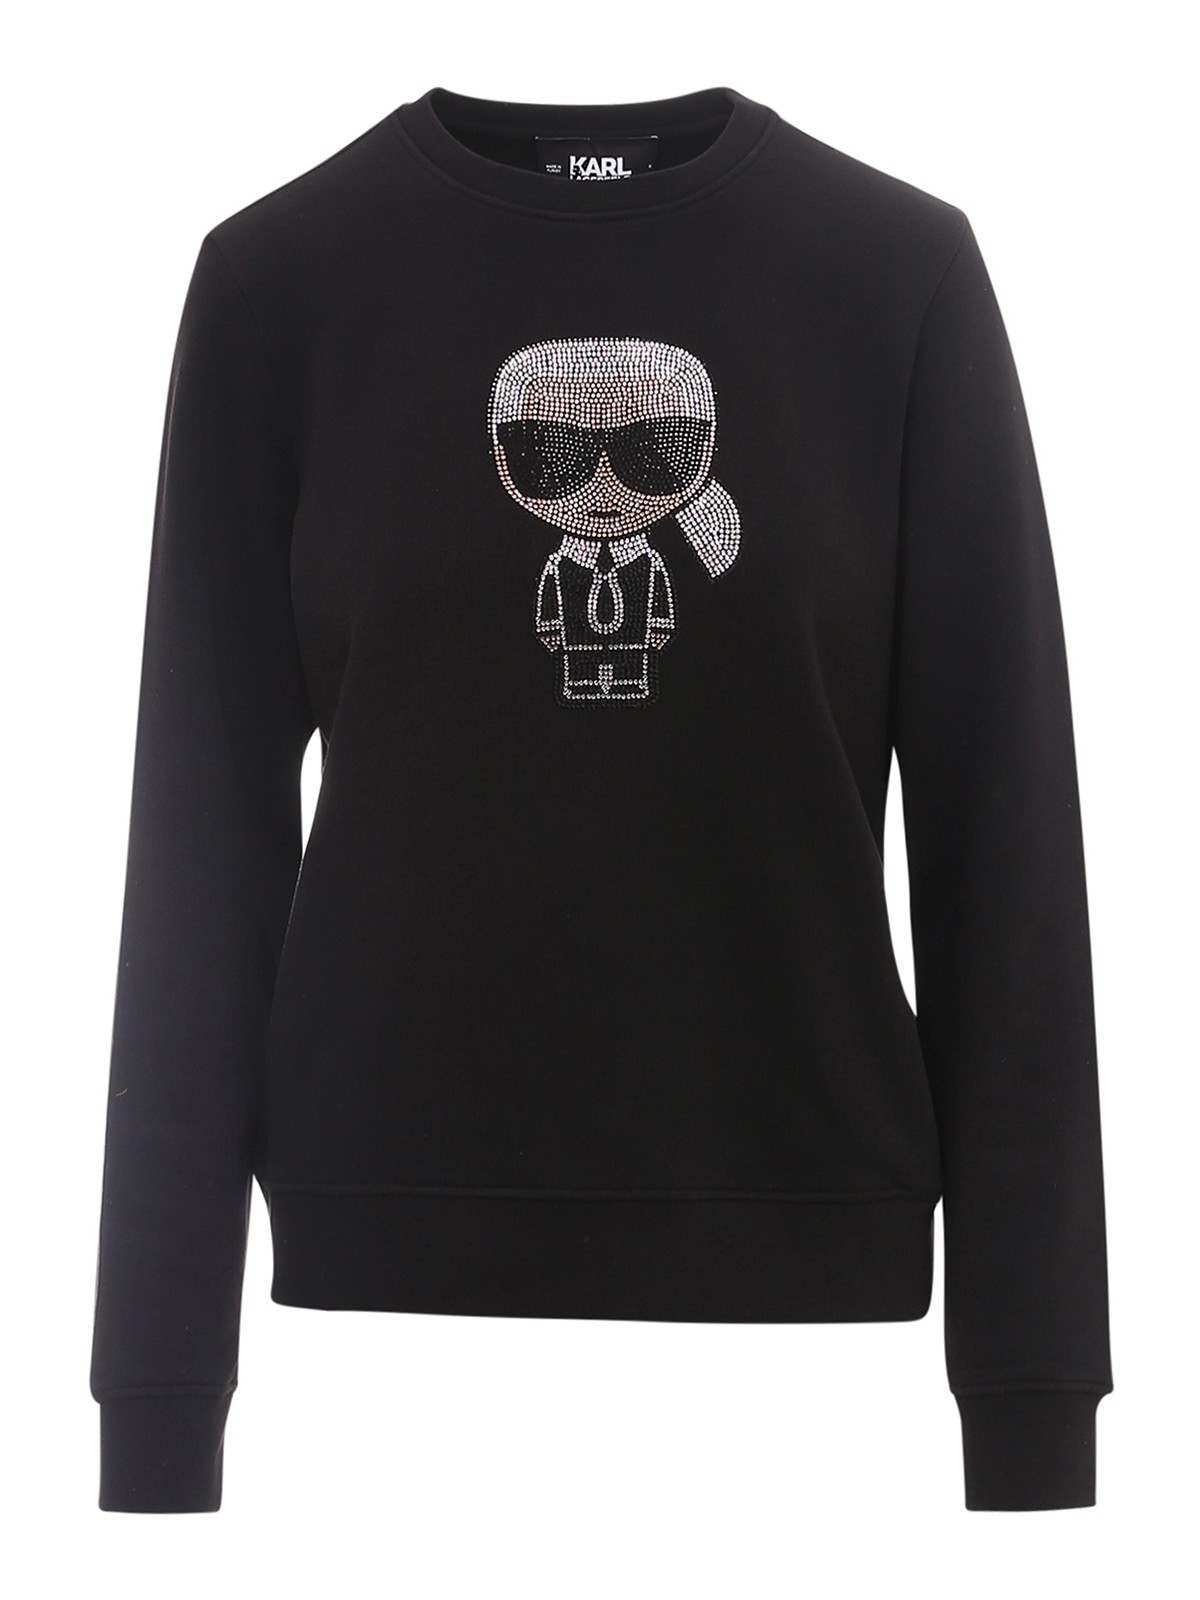 Karl Lagerfeld Embellished Sweatshirt In Black